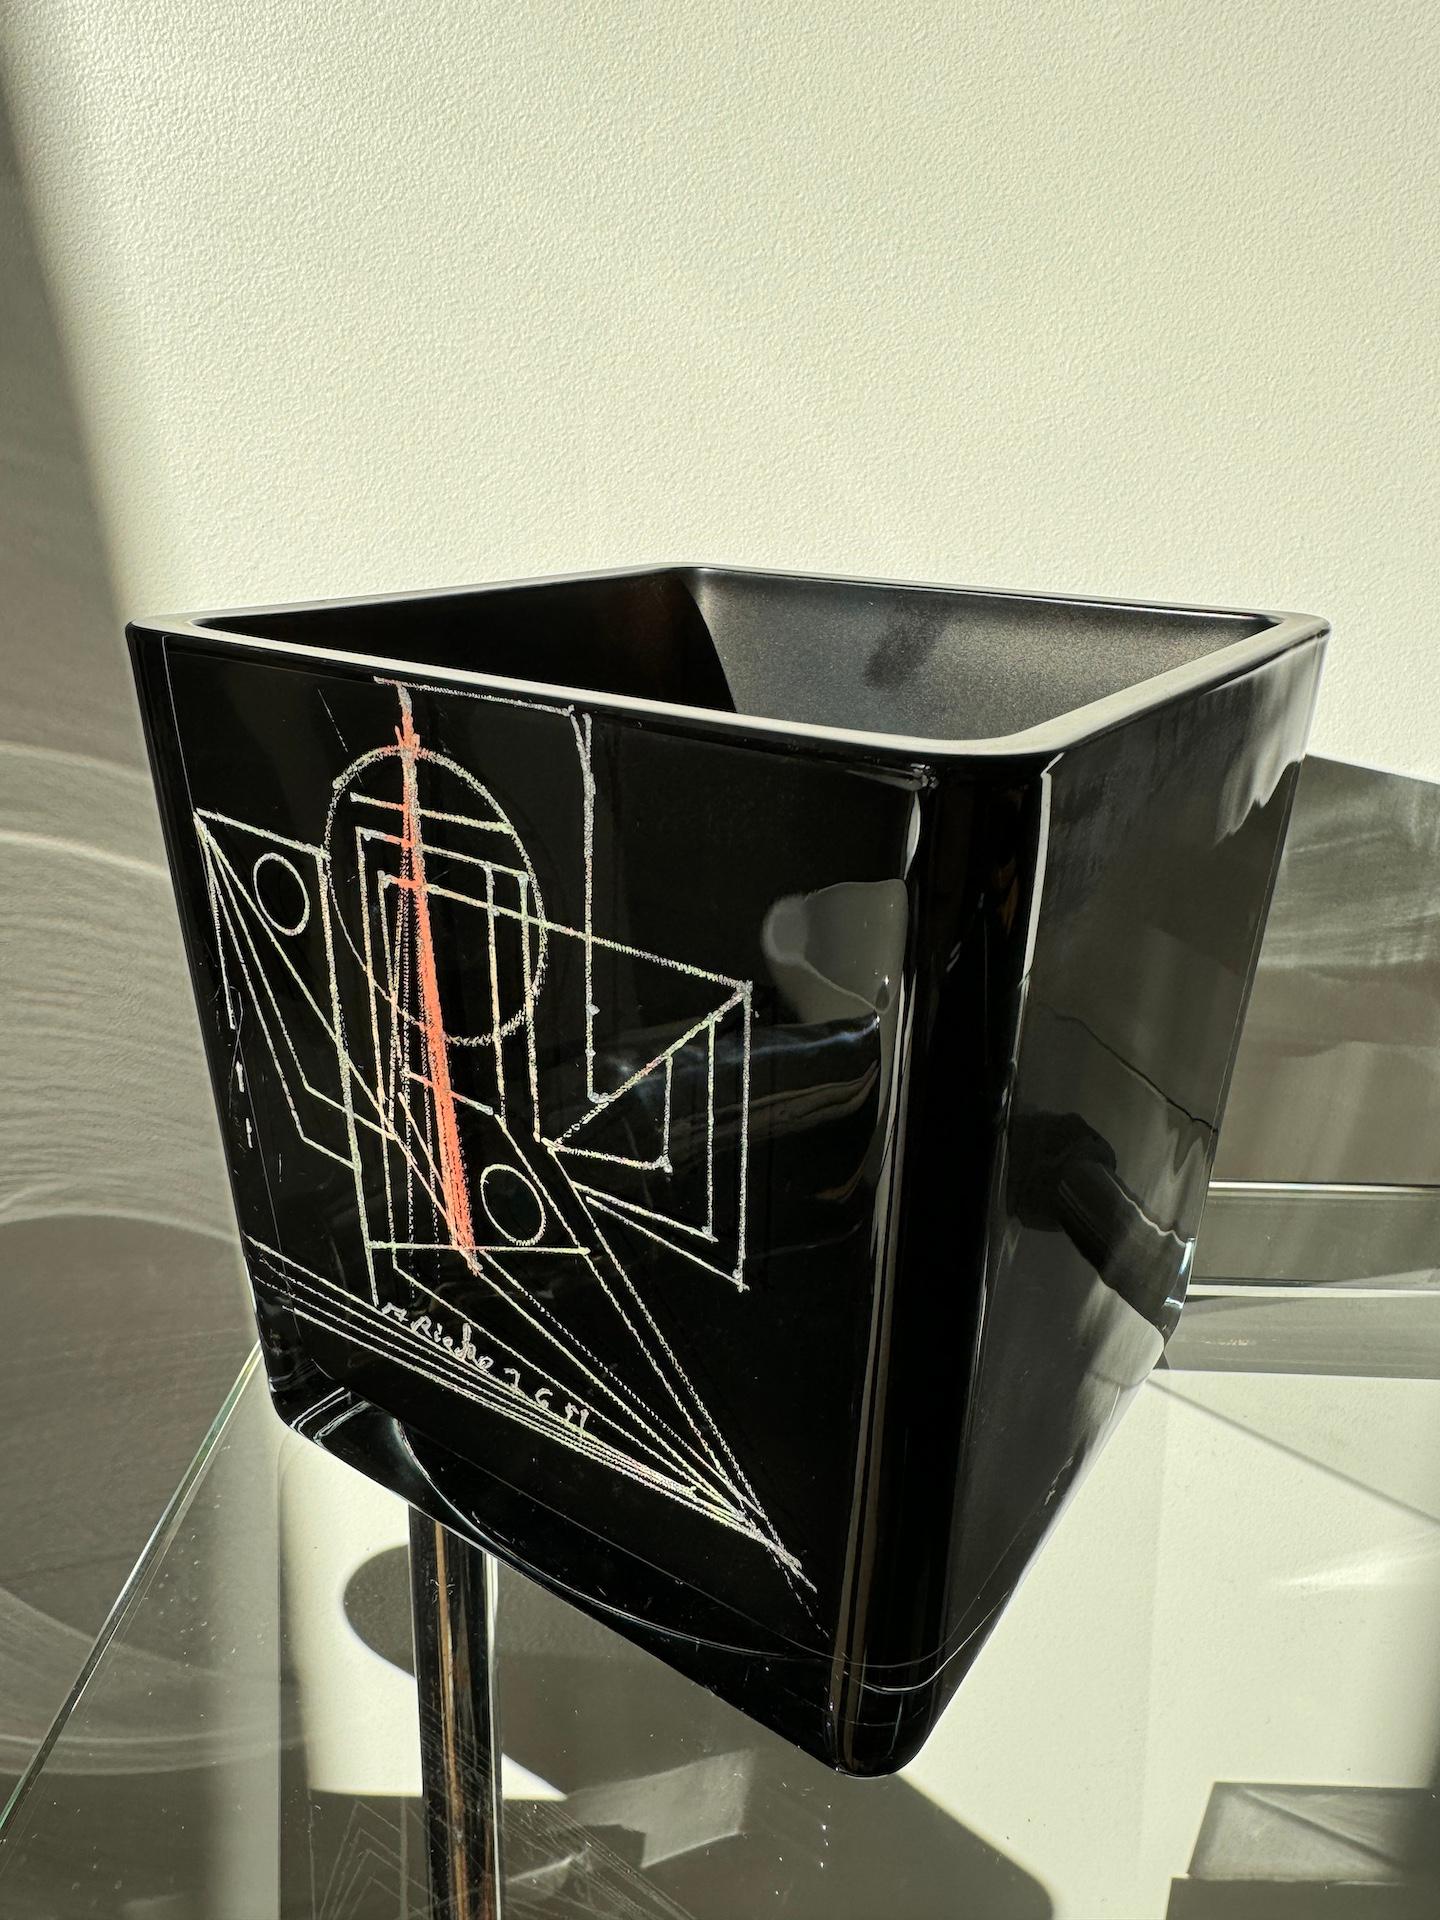 Kubistische Vase aus schwarzem Opalin von Anatole RIECKE, 1959, Abstrakter Engel, La Coupole Paris 
Diese Vase ist ein Werk des Künstlers russischer Herkunft, der zu Beginn des 20. Jahrhunderts in Paris lebte. Riecke beteiligte sich an der